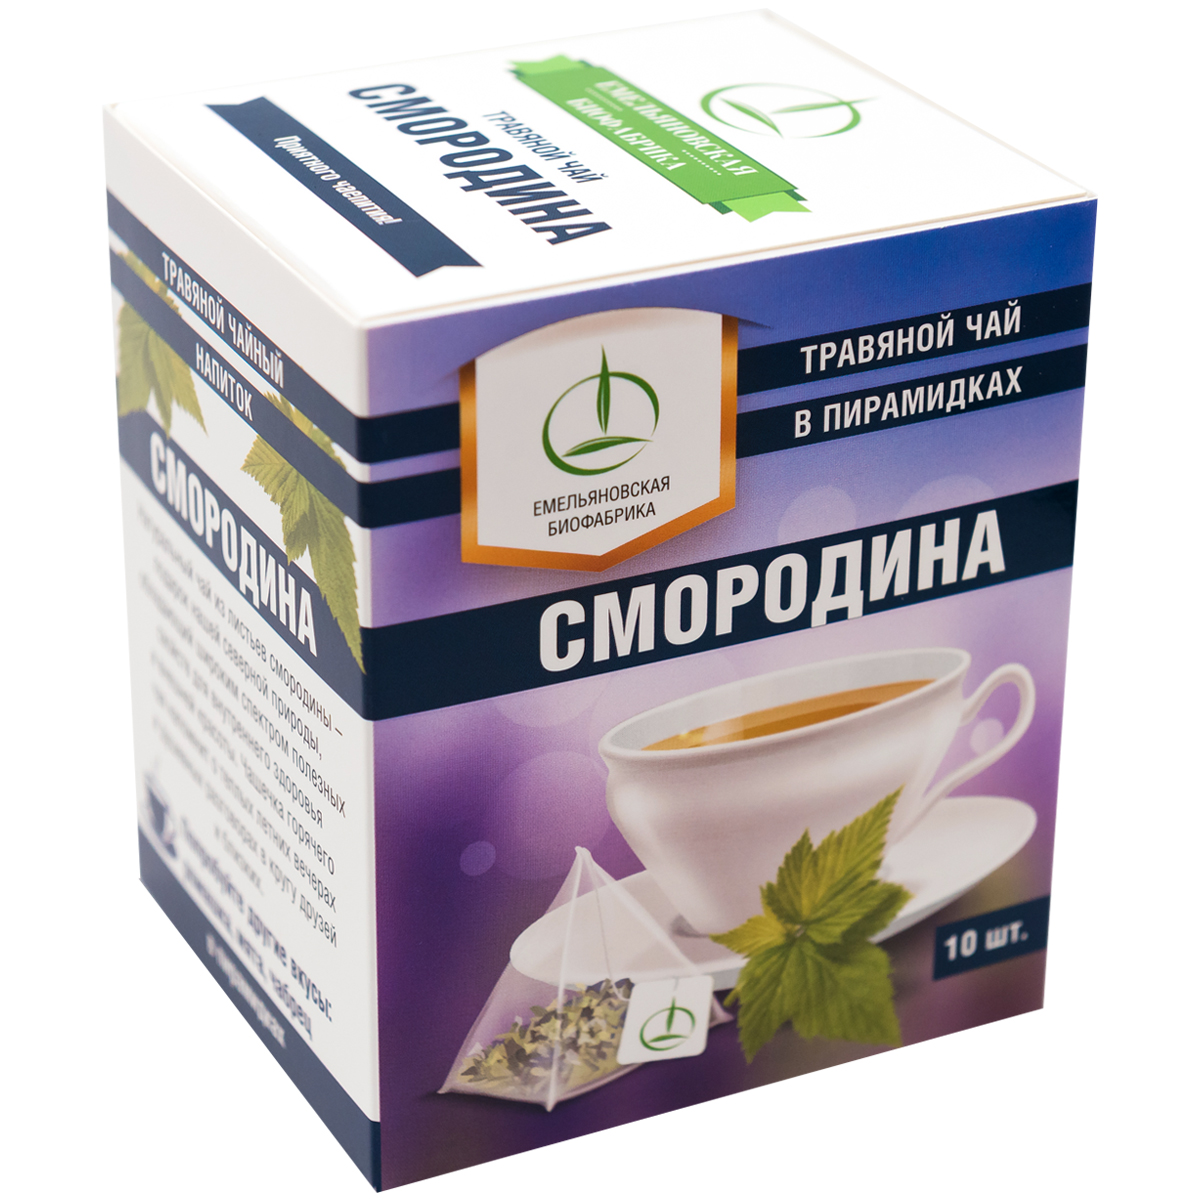 Чай Емельяновская Биофабрика Смородина лист в пирамидках 20 г - фото 2